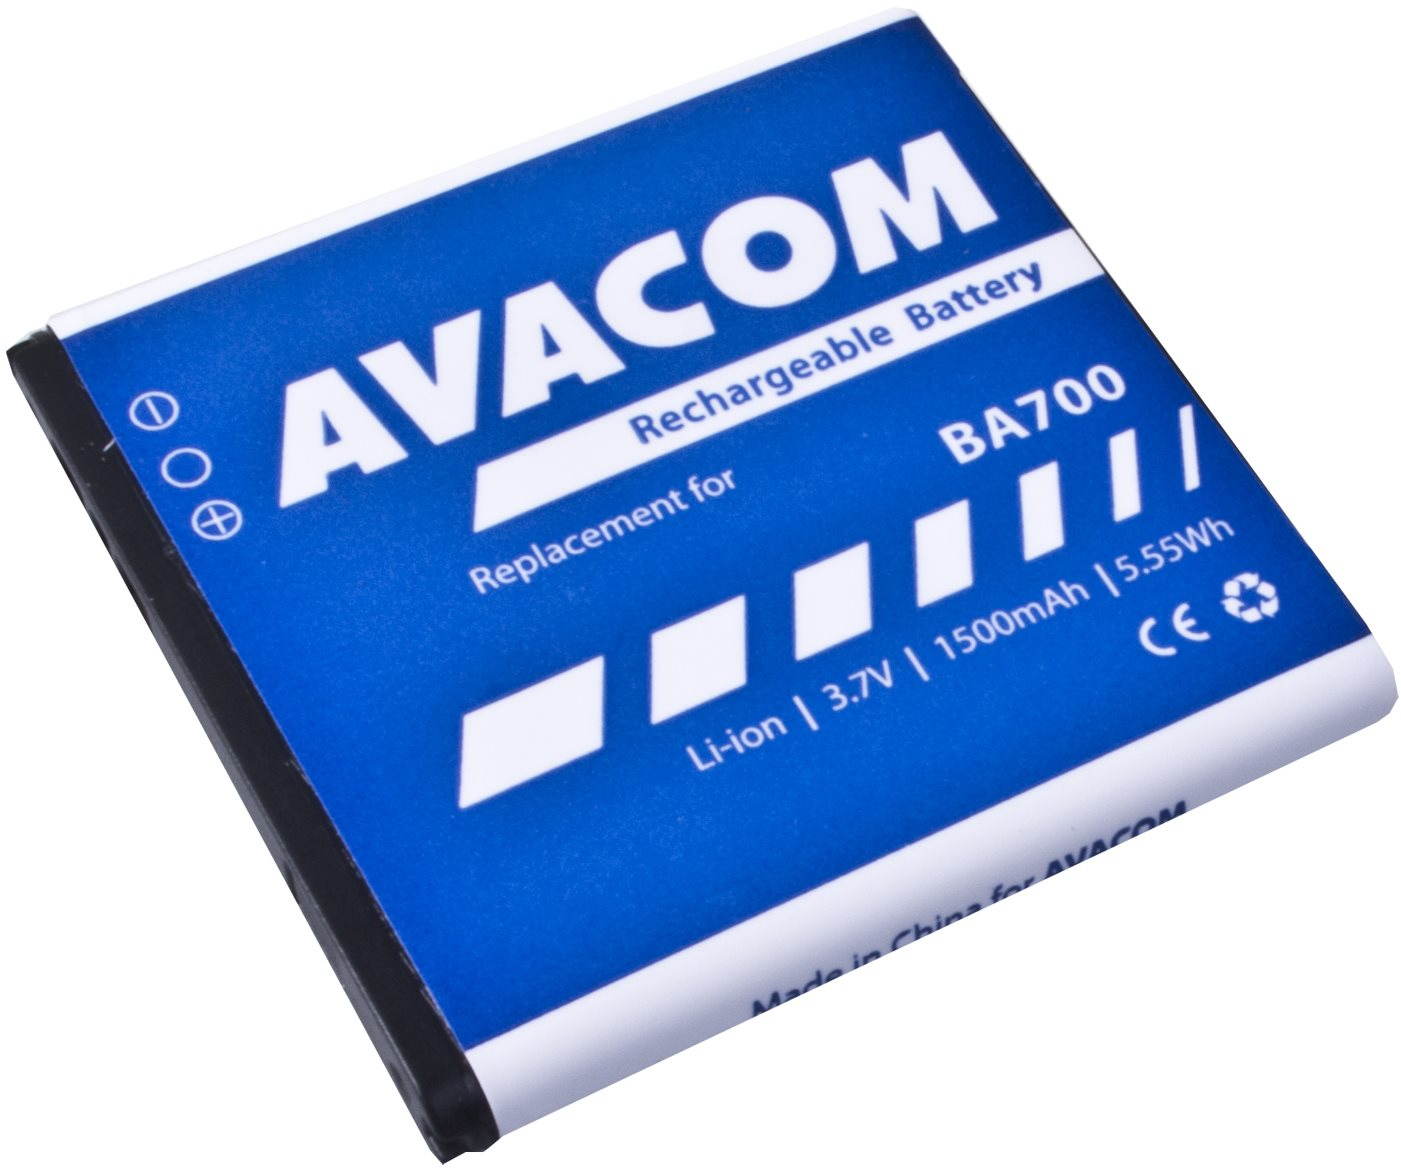 Avacom - Sony Ericsson Xperia Neo, Xperia Pro, Xperia Ray Li-ion 3,7V 1500 mAh (pót BA700)